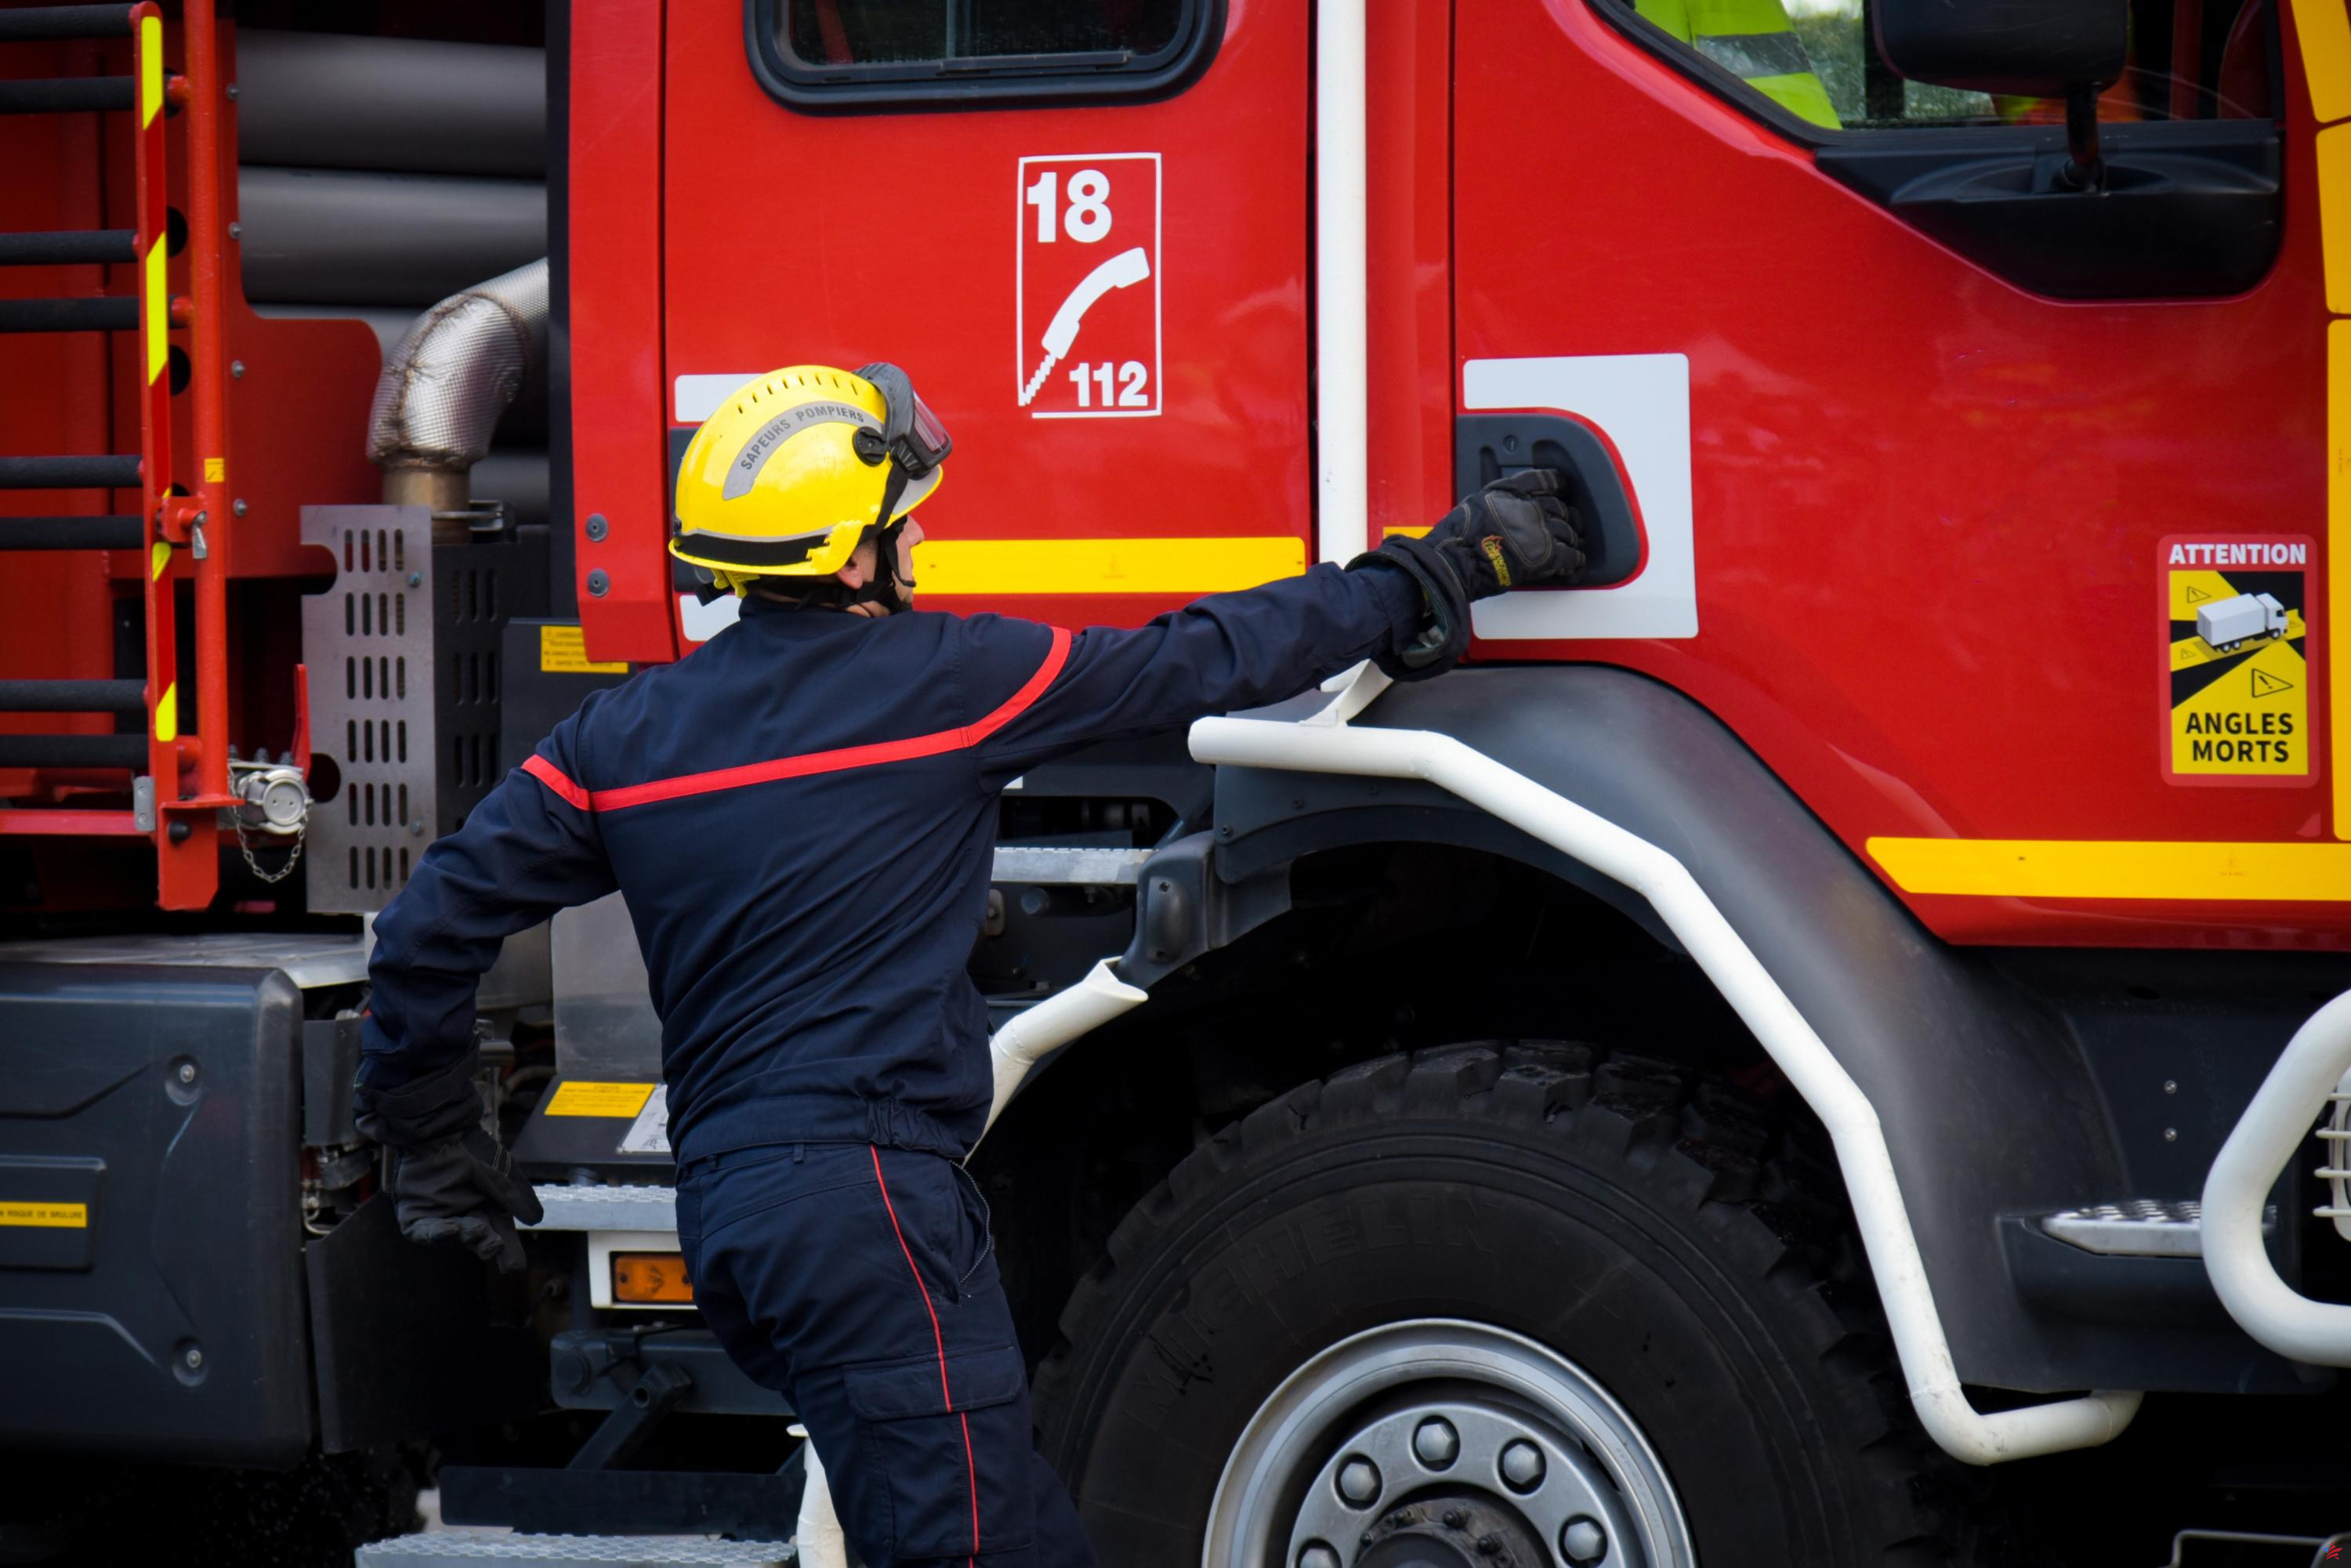 Aveyron: un bombero de 17 años condenado por incendio provocado